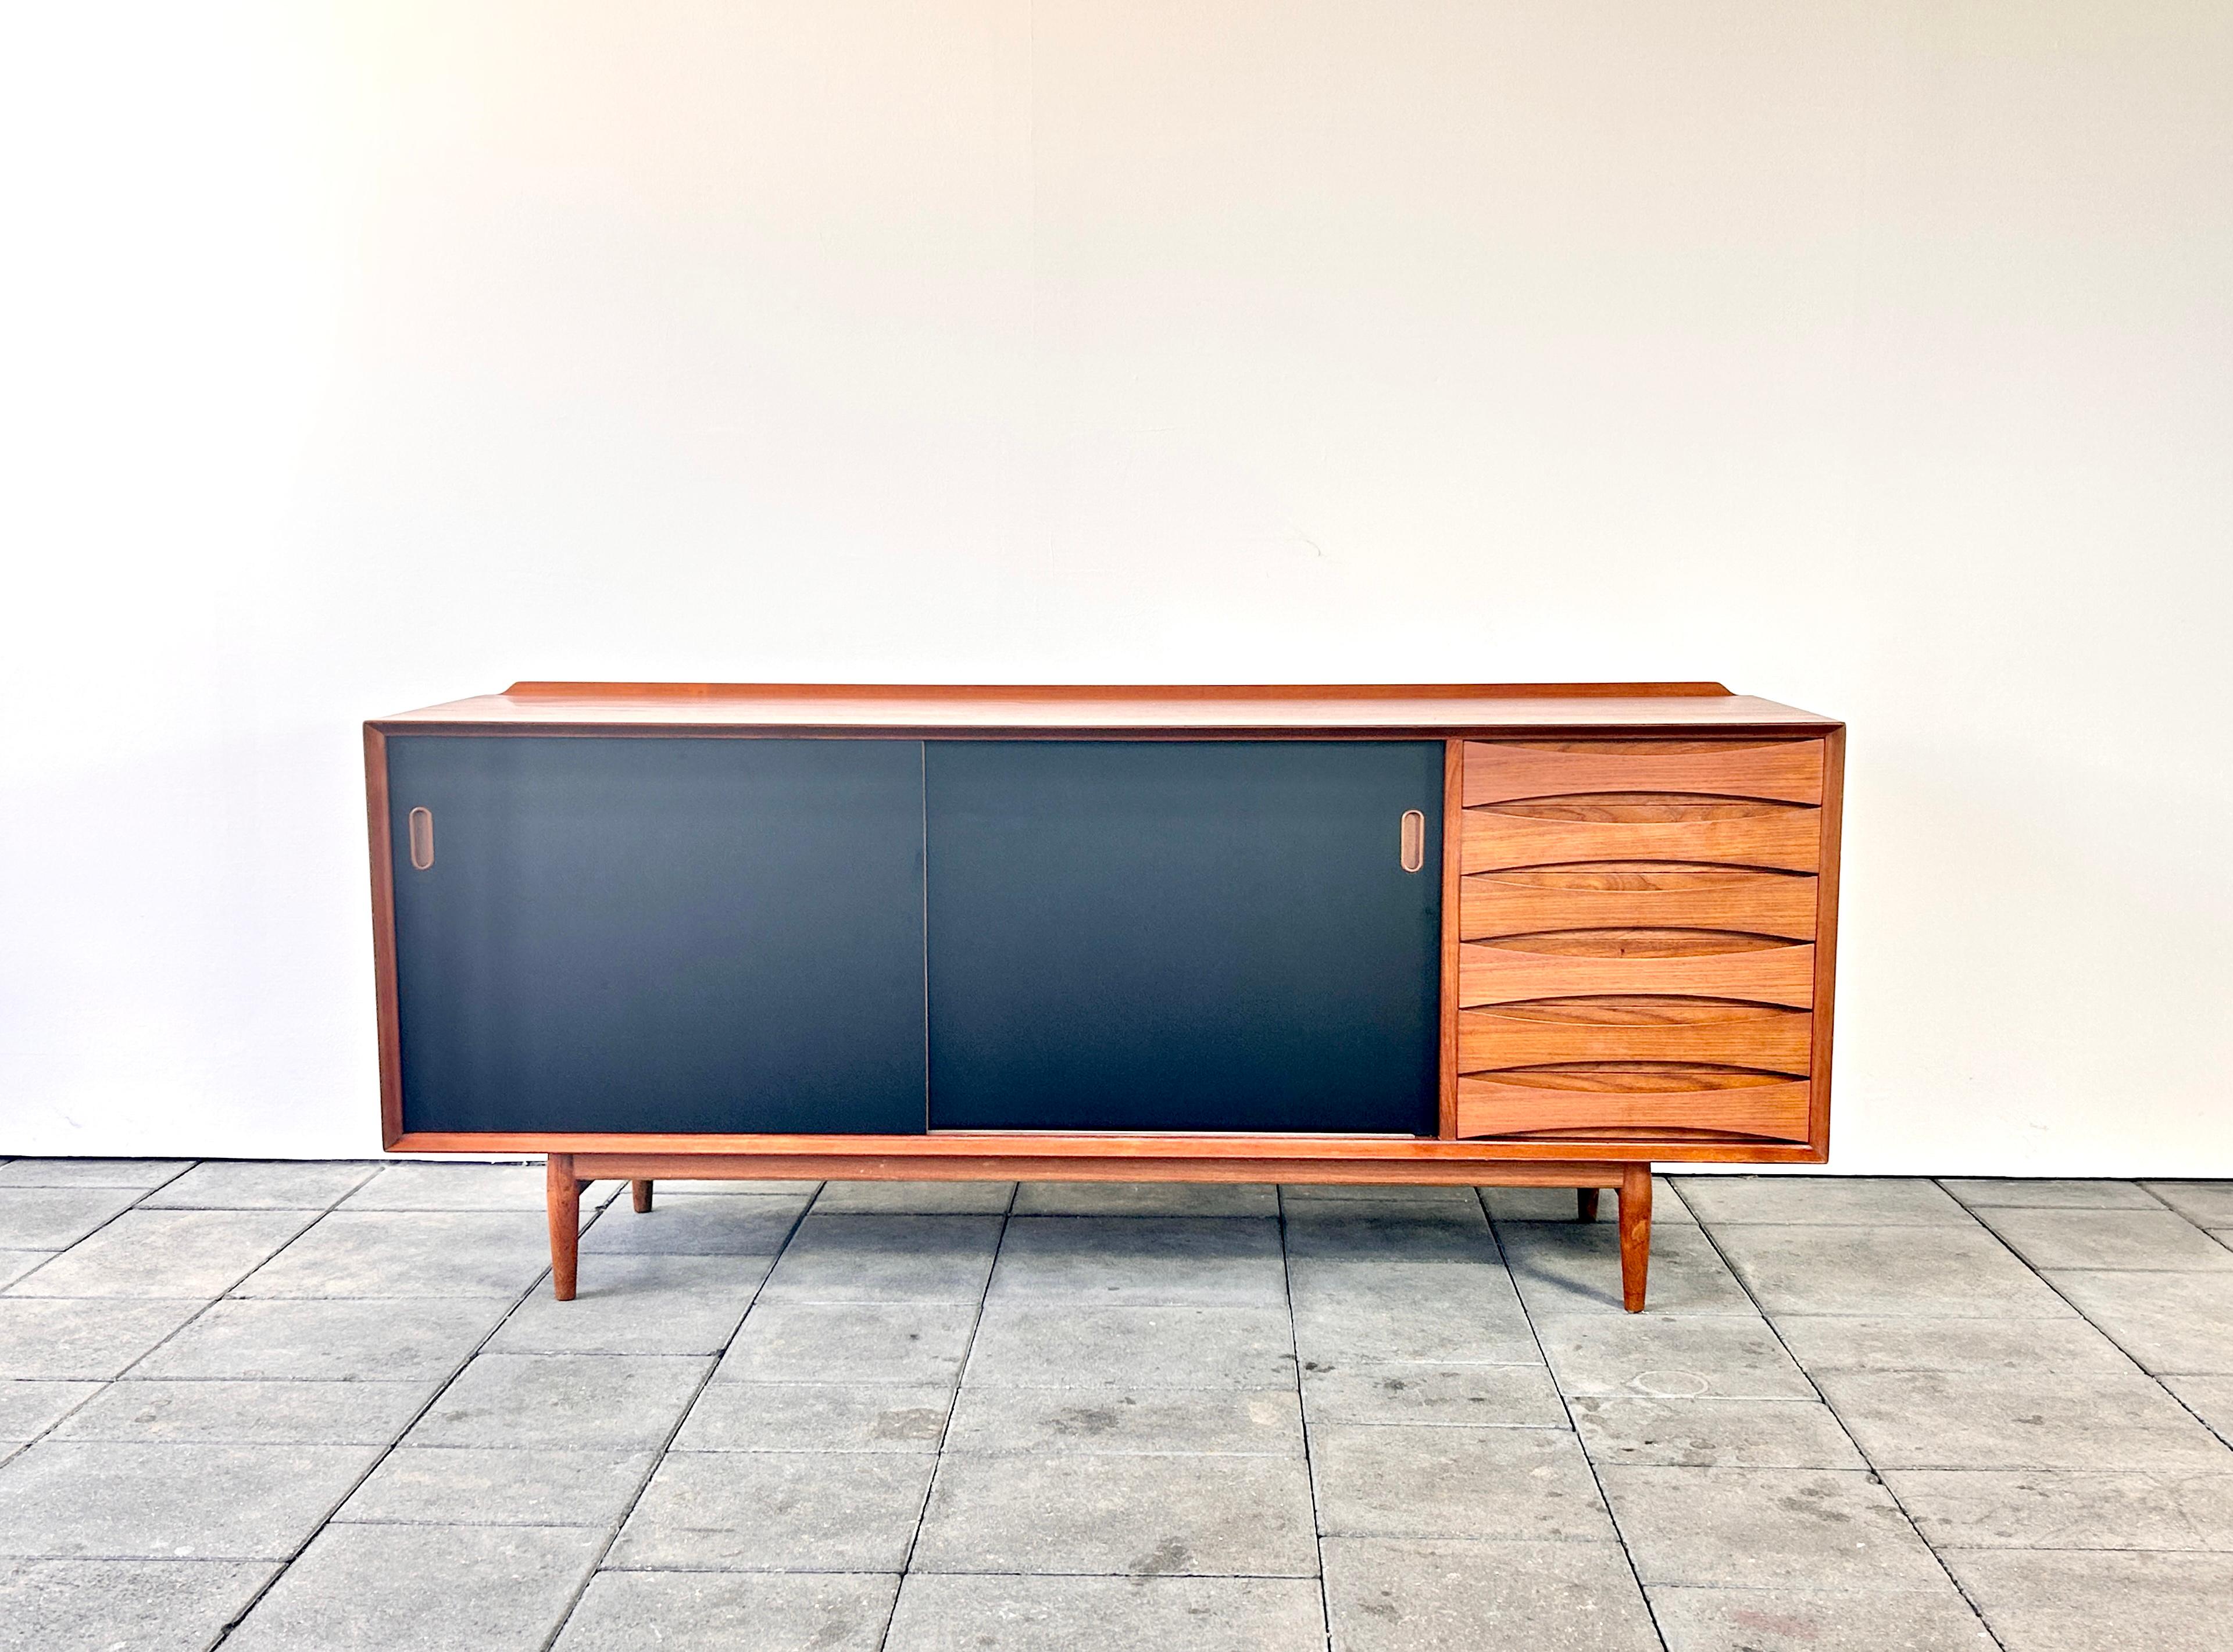 Buffet OS29 conçu par Arne Vodder pour les meubles Sibast, 1959

La série Triennale est certainement l'une des pièces les plus connues conçues par le célèbre Danois Arne Vodder. Fabriqué en bois de teck massif (profilés de contour, tiroirs, base et